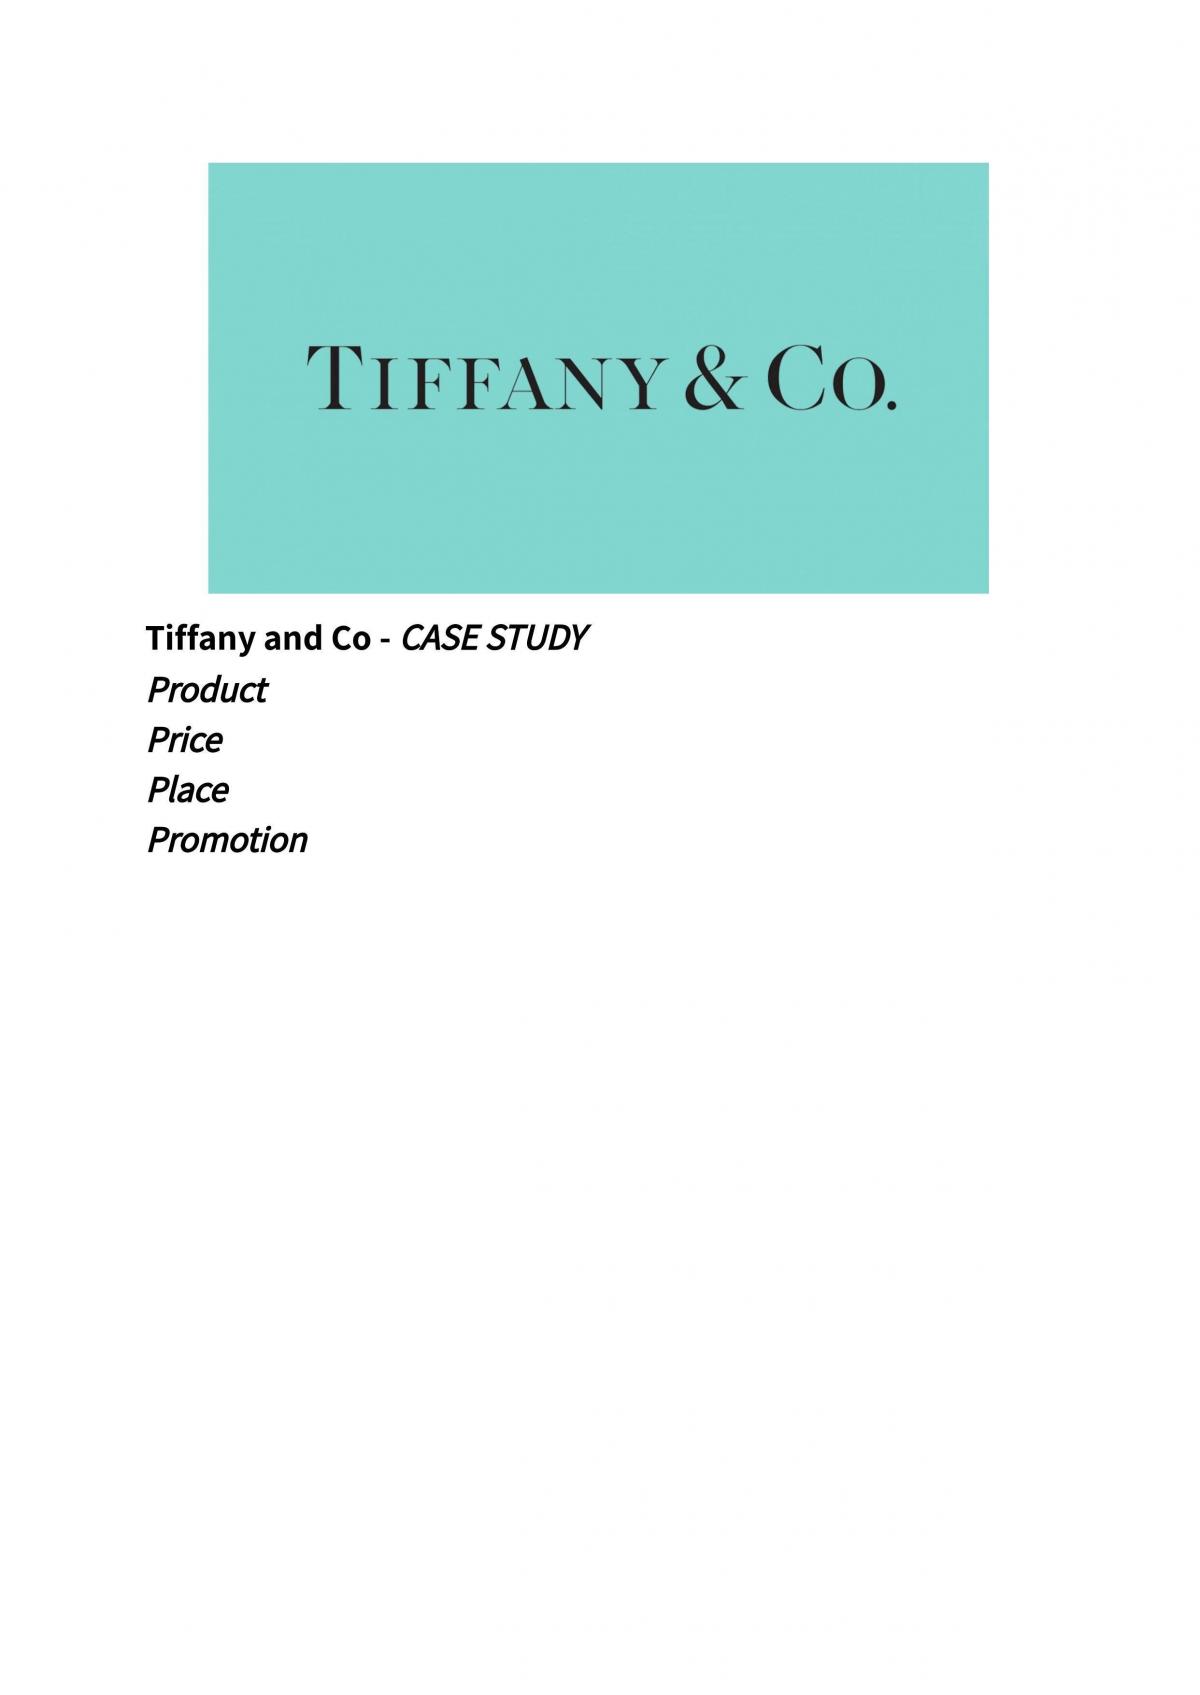 case study tiffany & co